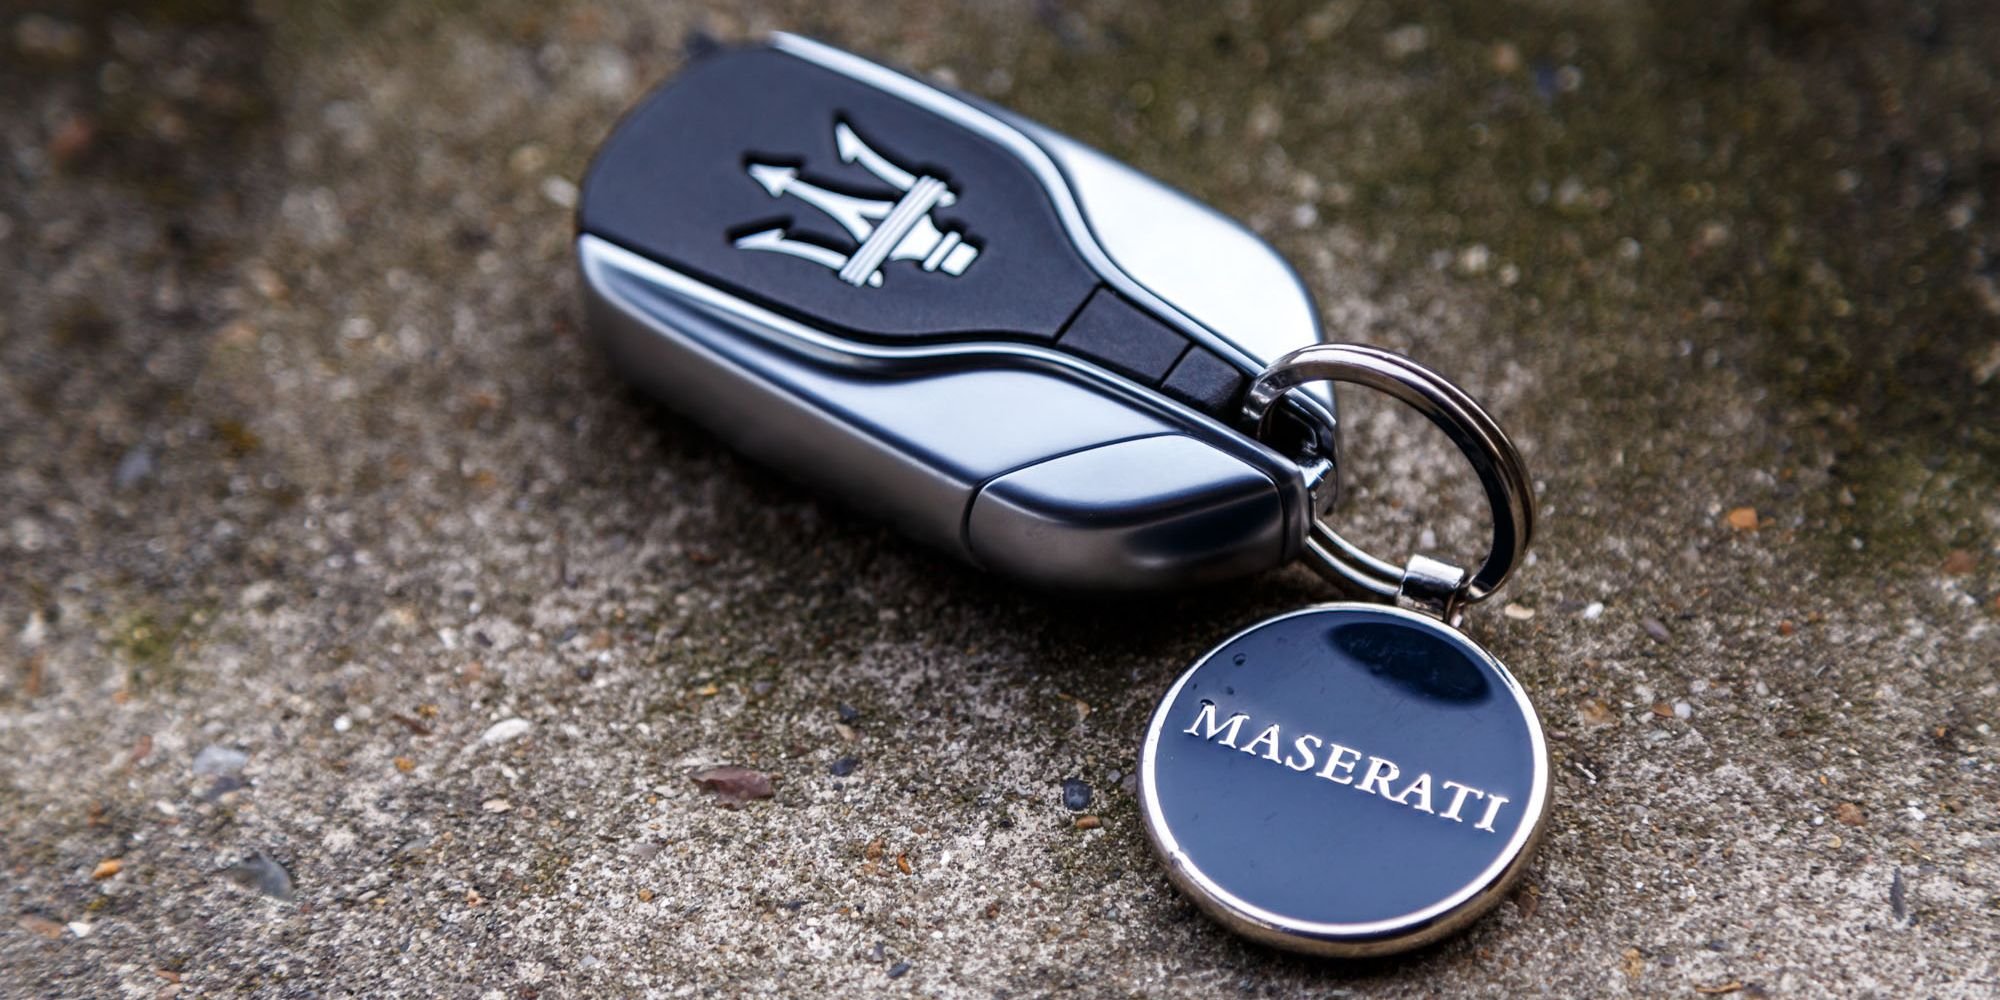 The key machine. Ключи от машины. Ключи от Мазерати. Красивые ключи от авто. Брелок на ключи от машины.